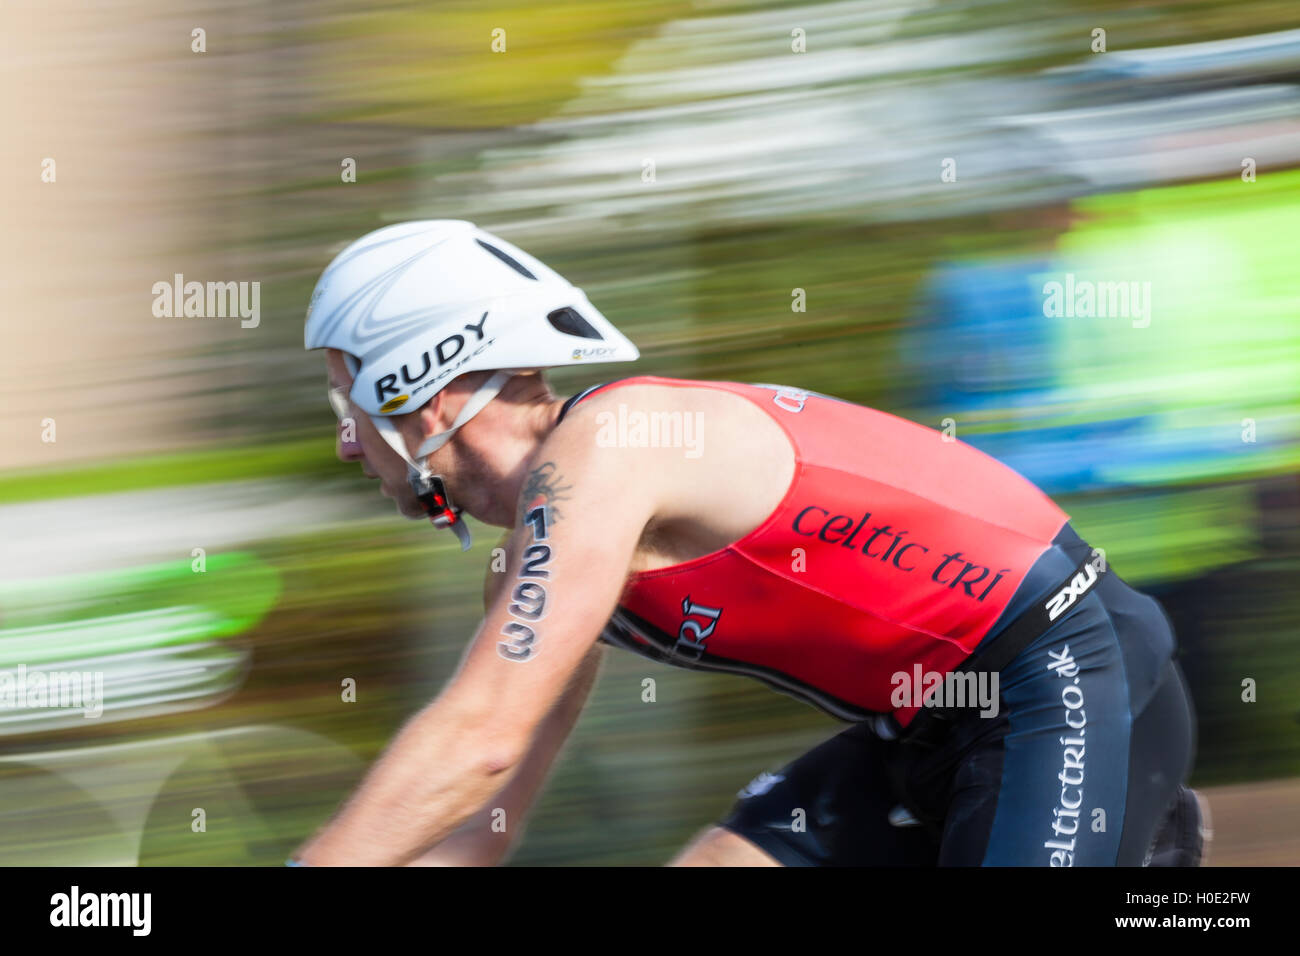 Tenby 2016 Ironman les cyclistes aux suivis et carew vitesse montrant floue Banque D'Images